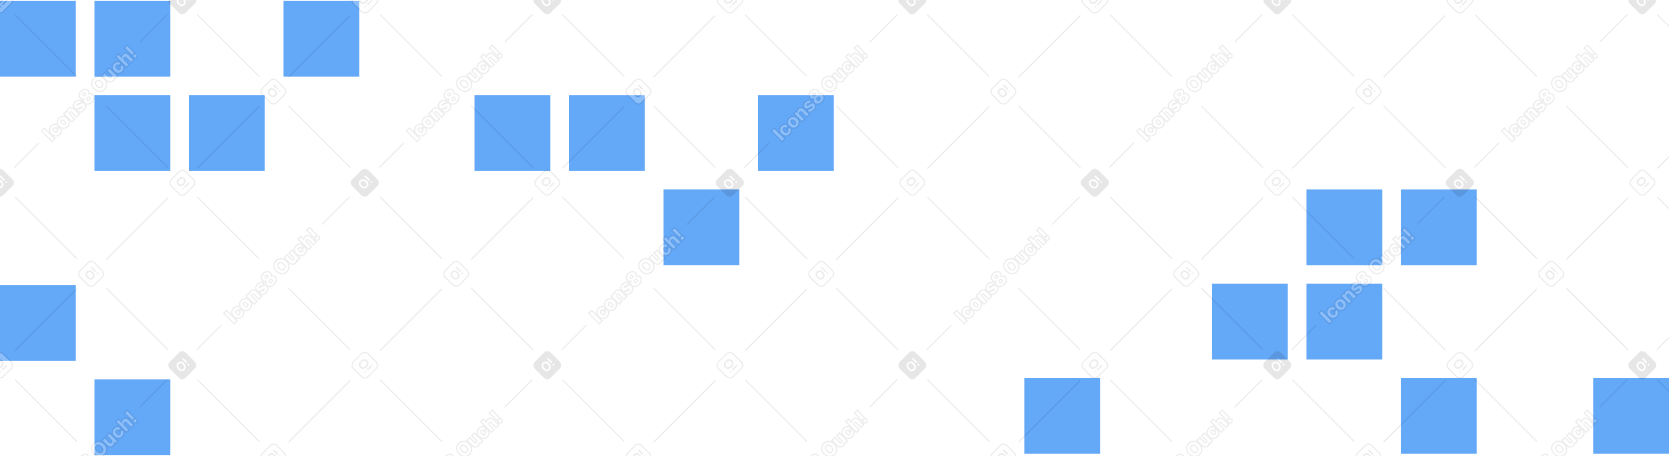 tiles Illustration in PNG, SVG